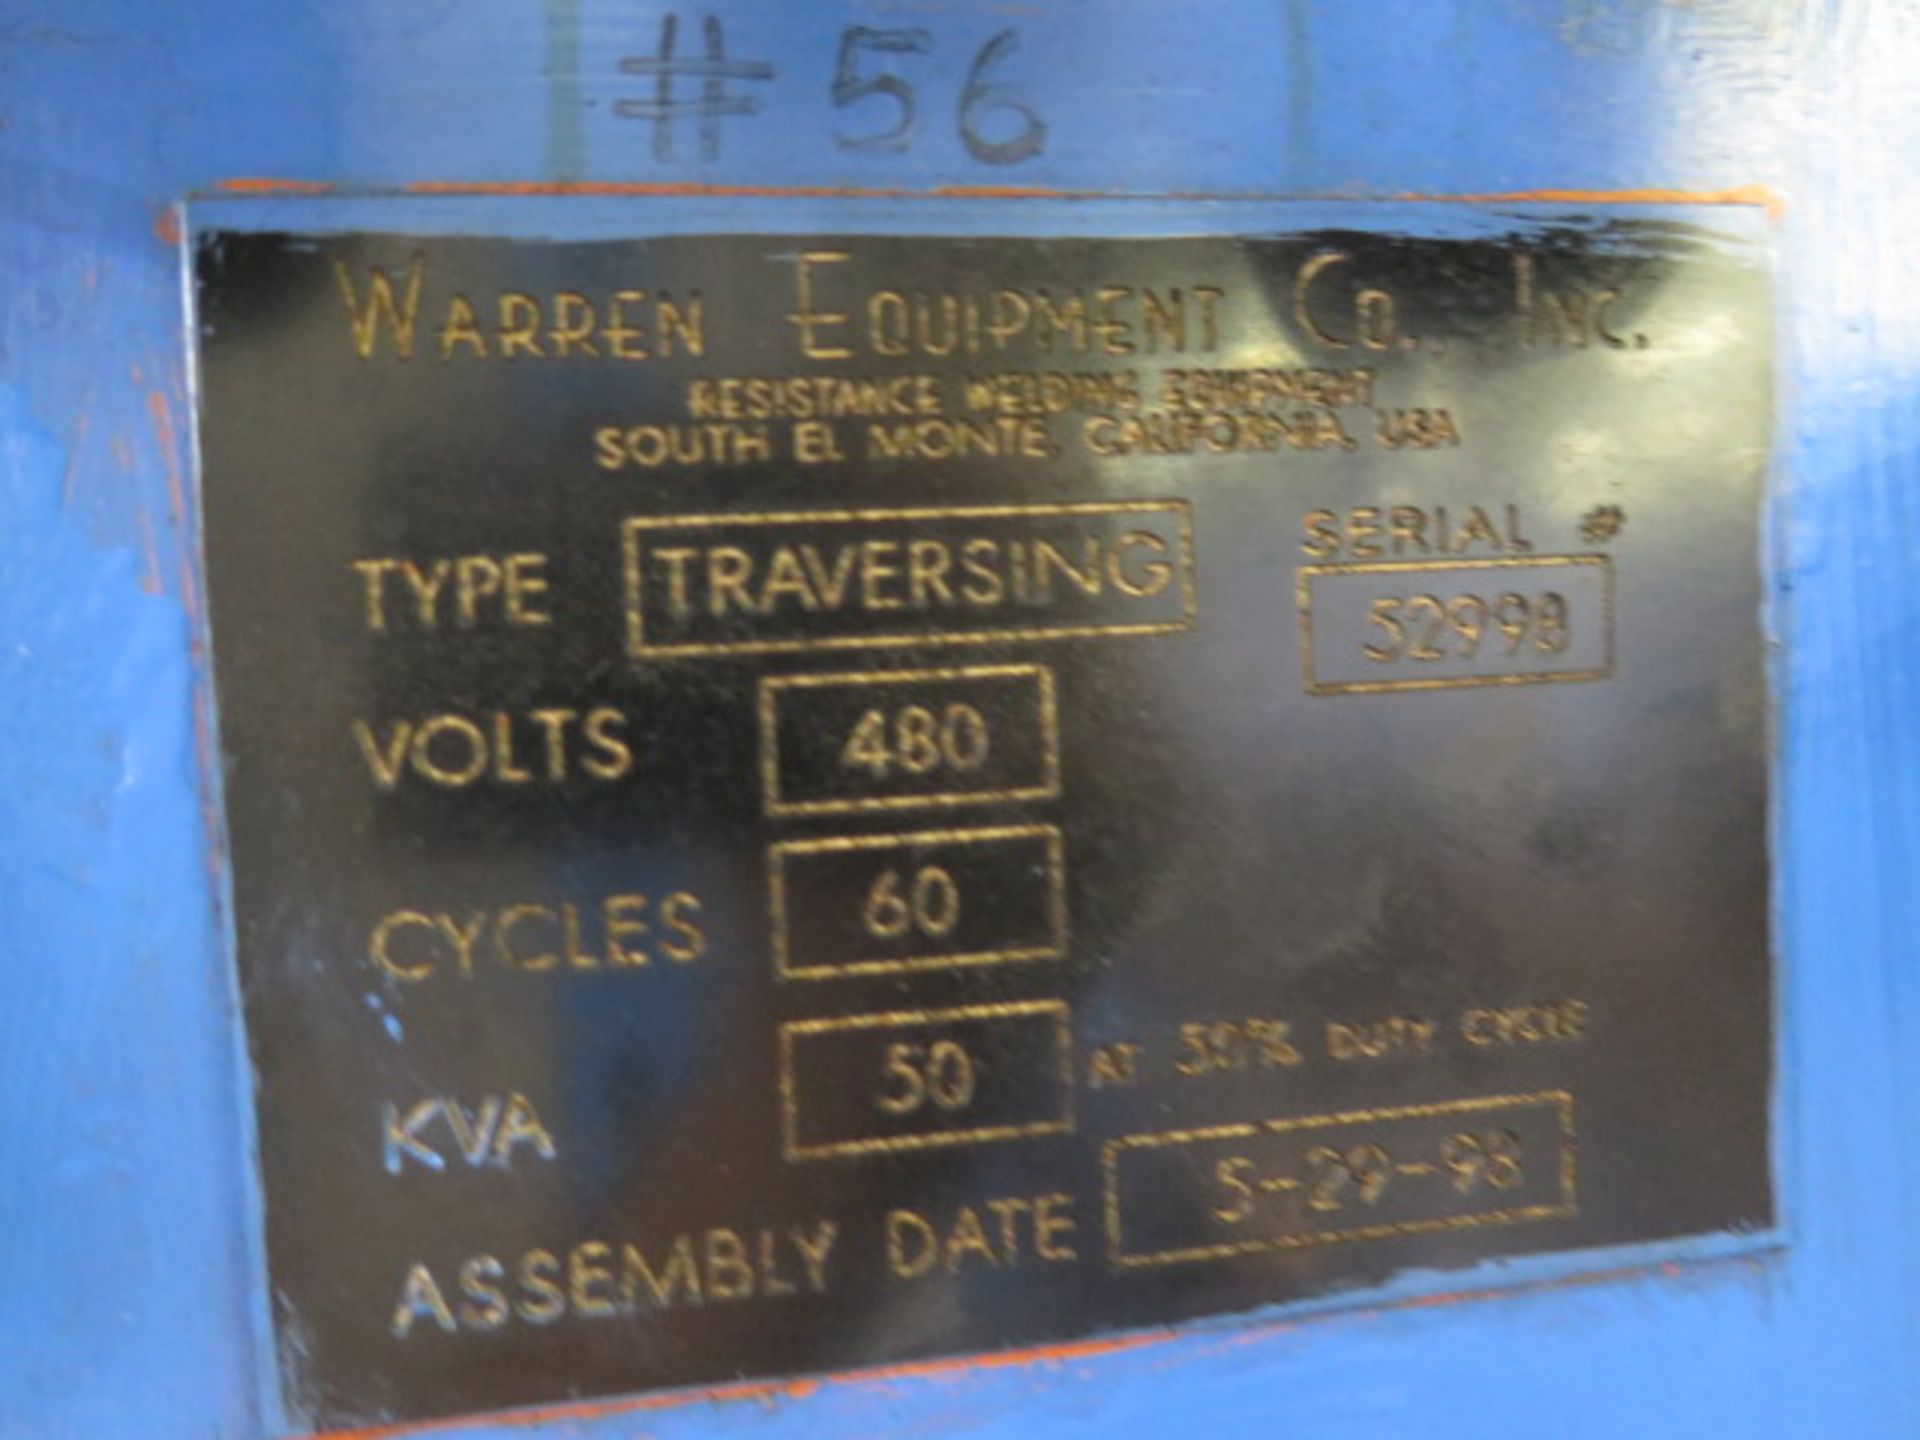 Warren Equip. 24" 50kVA Traversing Spot Welder s/n 52998 w/ iii Resis Welding Controls, SOLD AS IS - Image 13 of 13